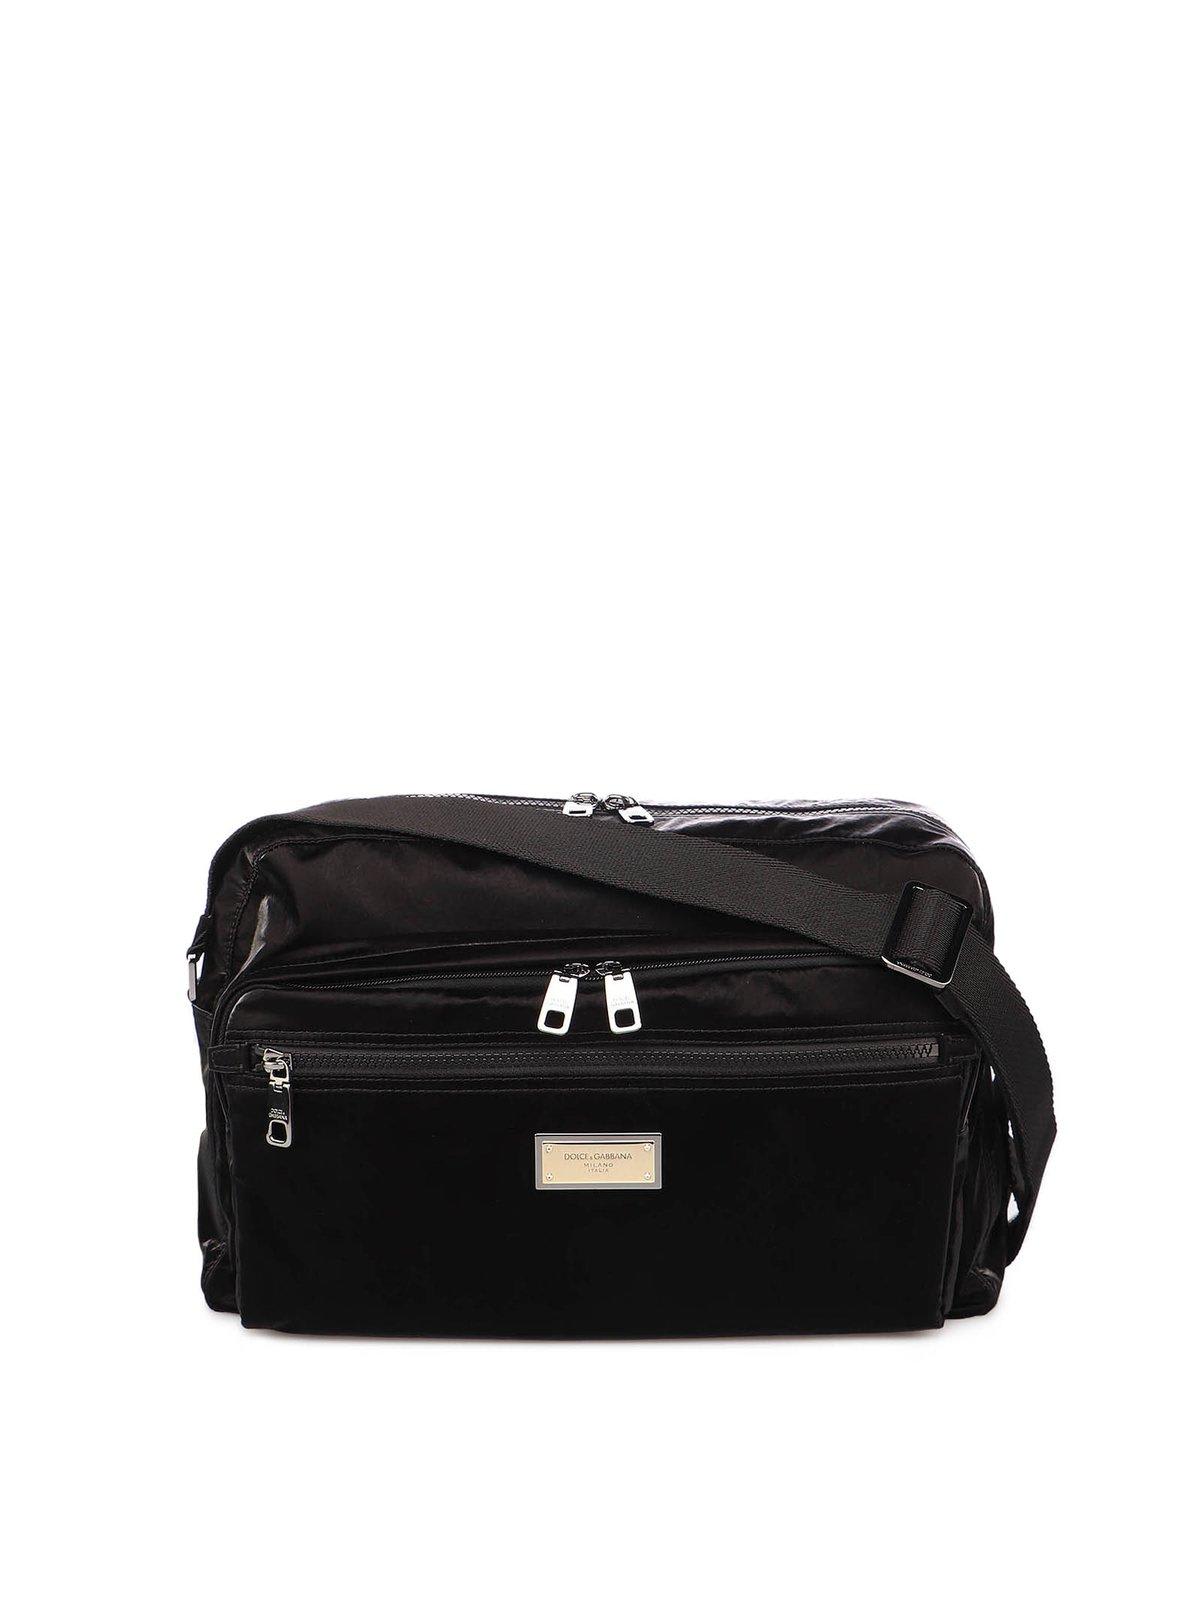 Dolce & Gabbana Logo Plaque Shoulder Bag In Black